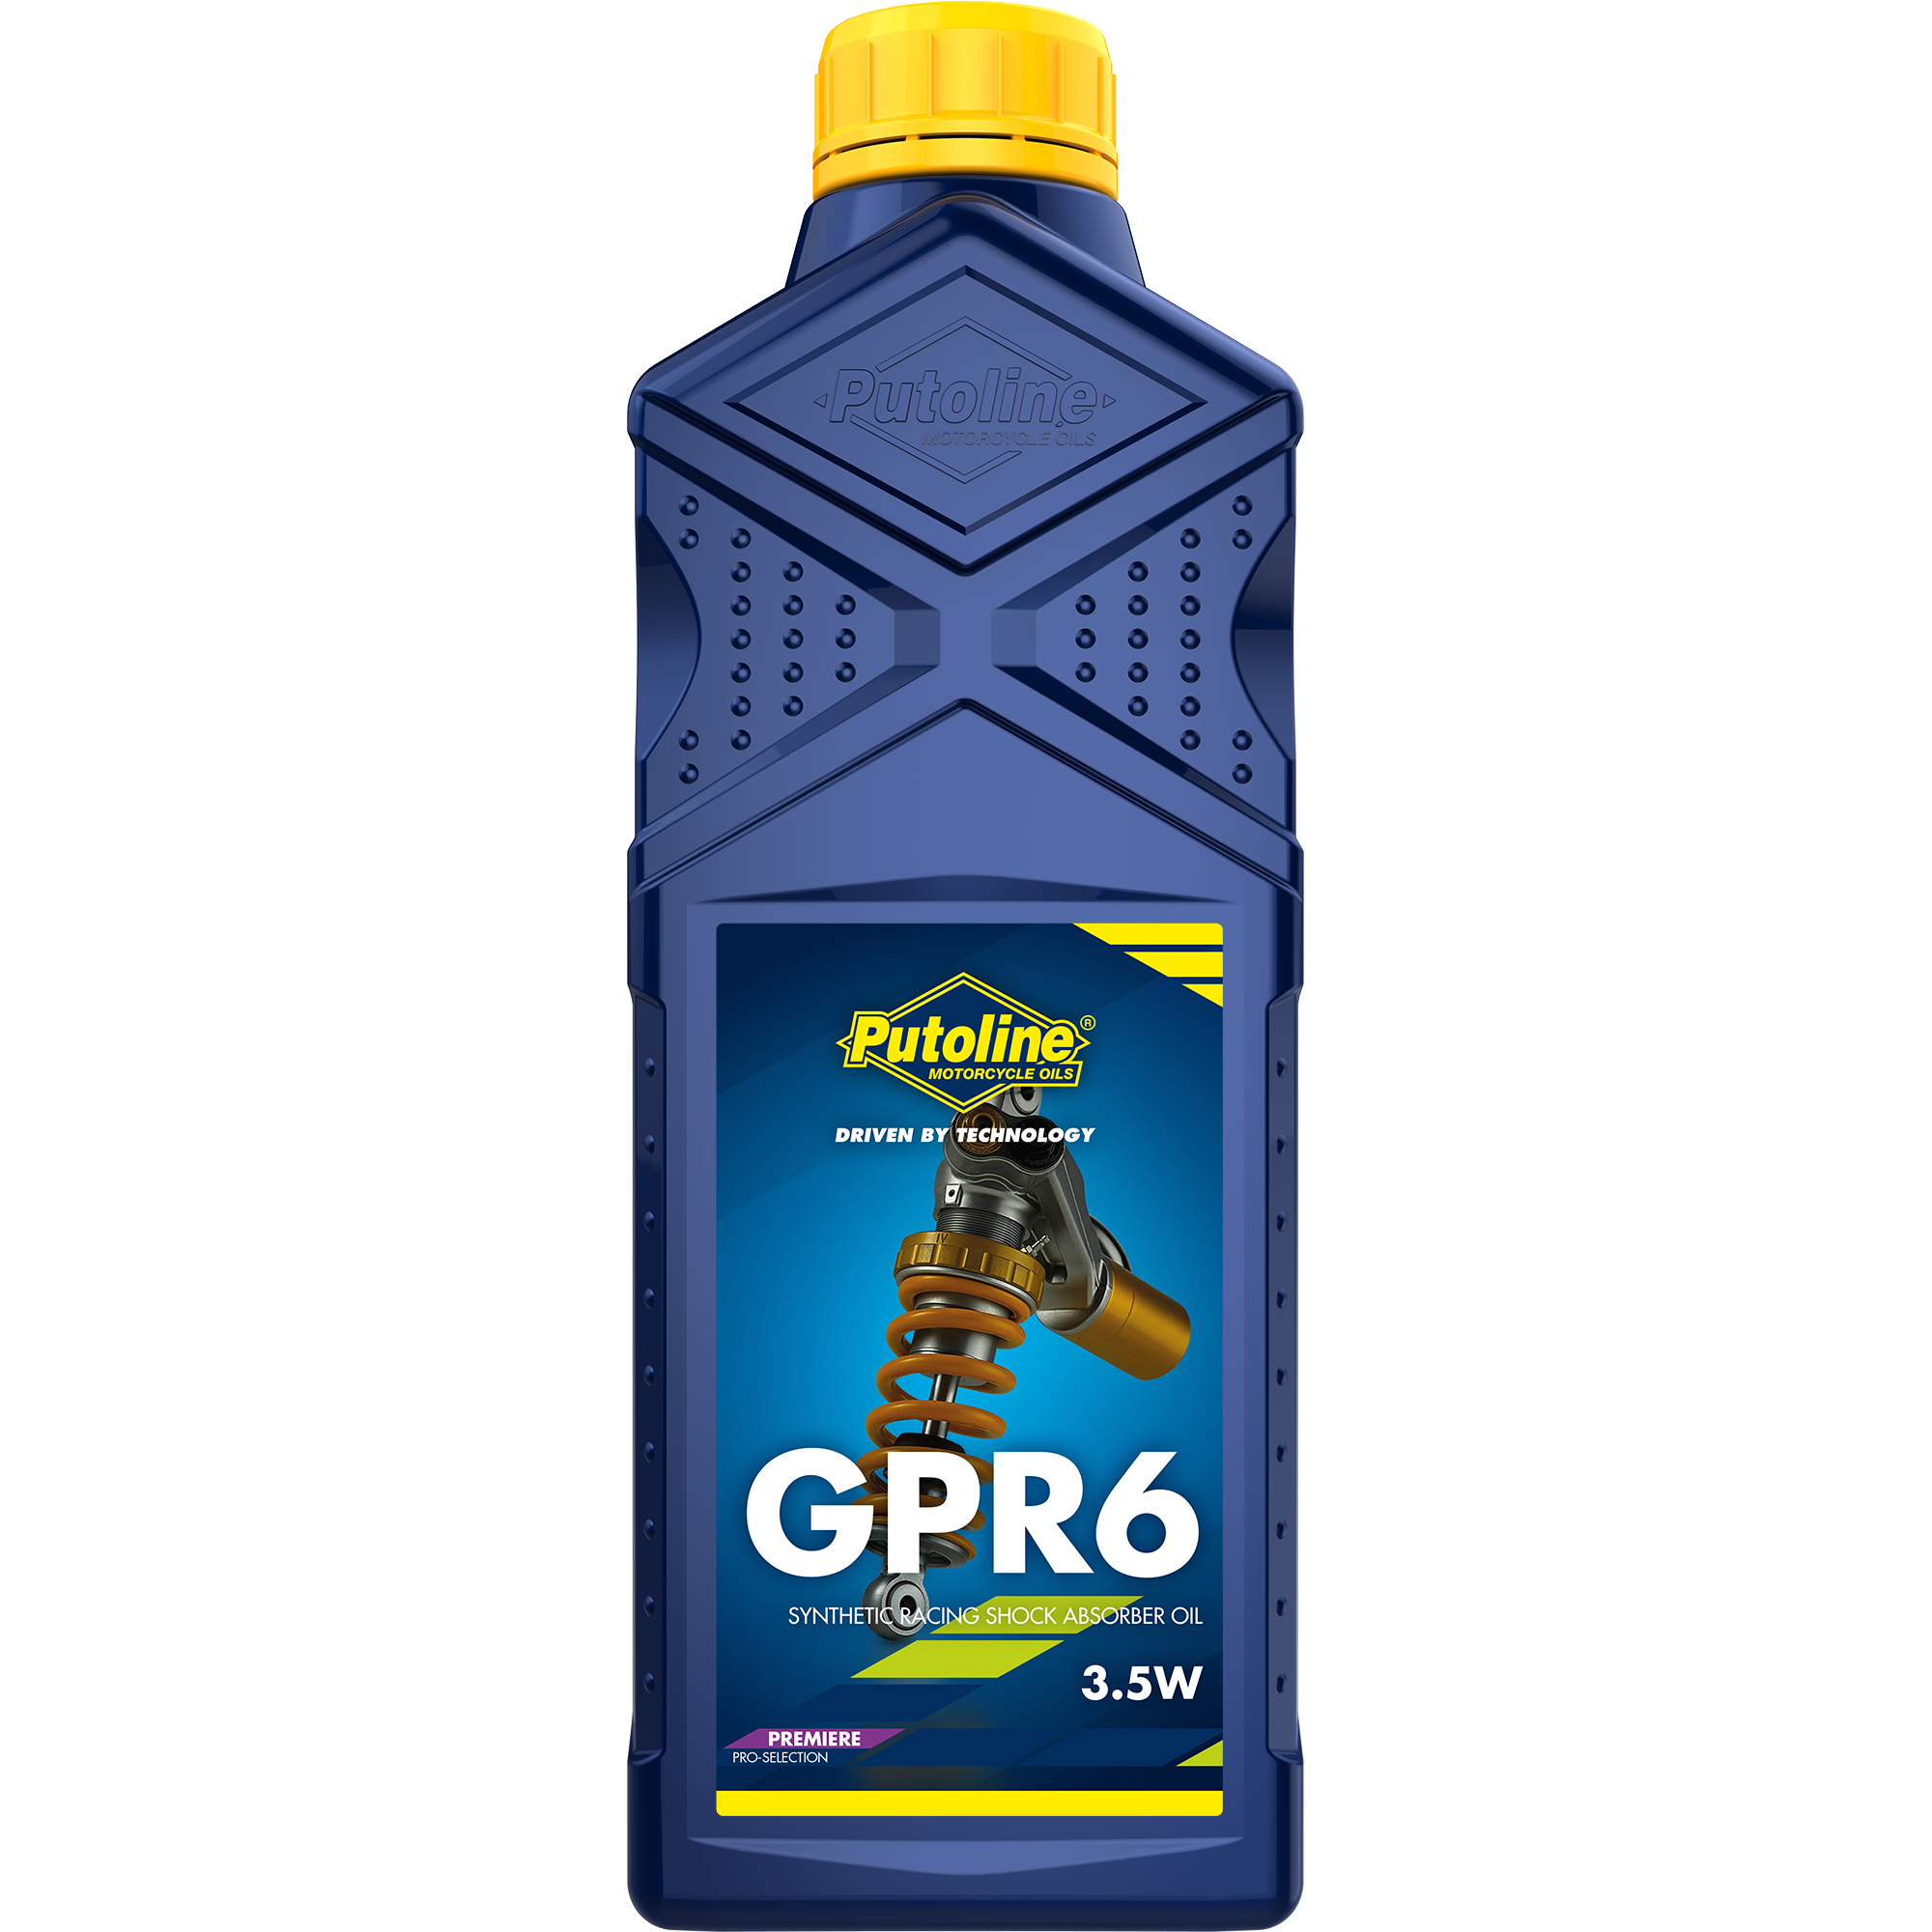 Putoline GPR 6 3.5W, 1 lt